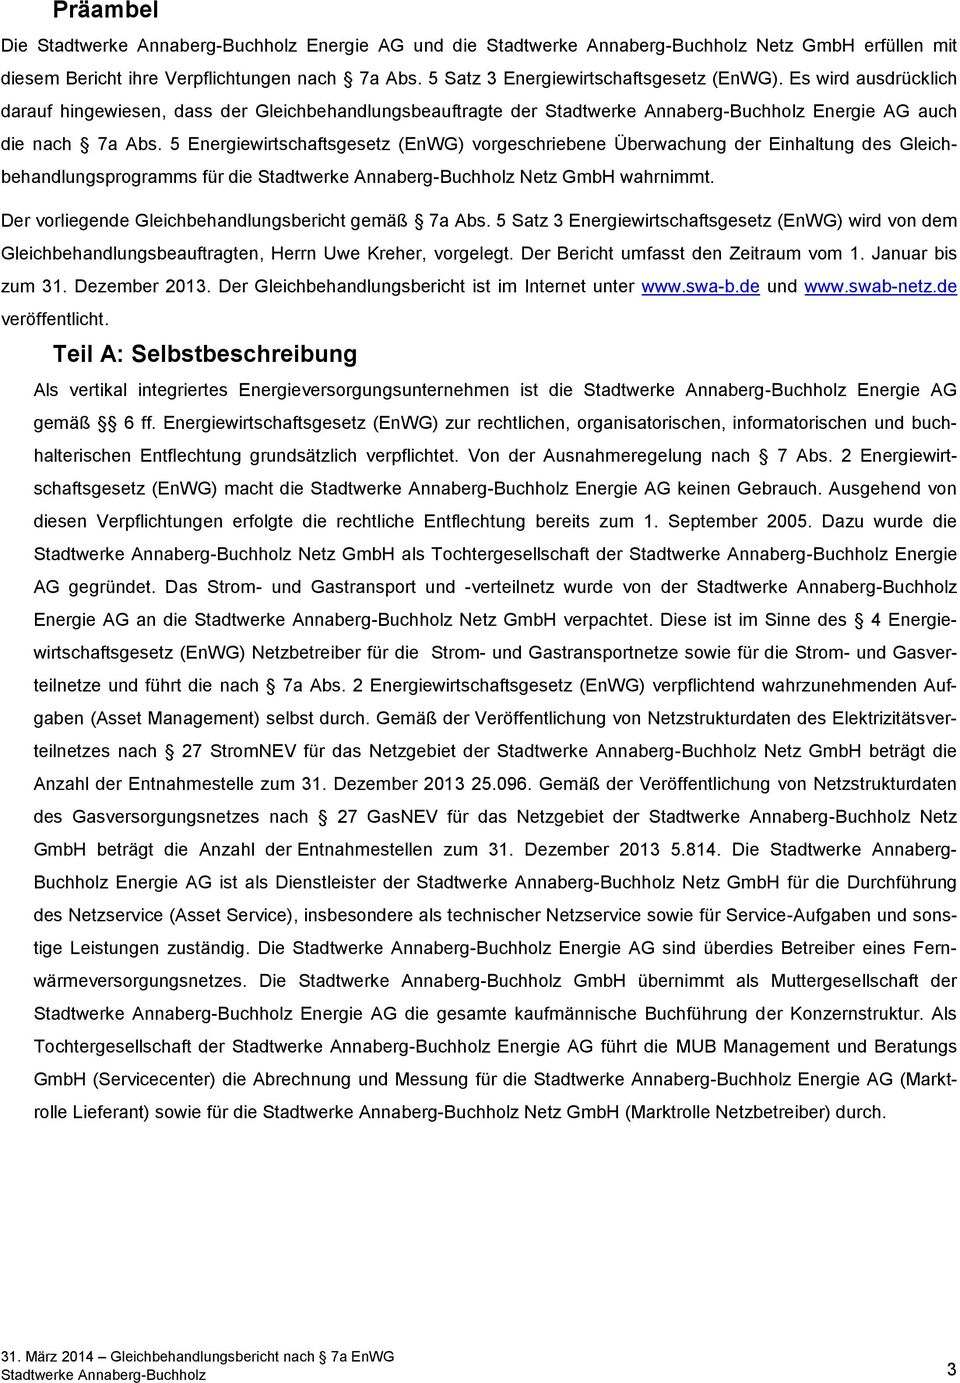 5 Energiewirtschaftsgesetz (EnWG) vorgeschriebene Überwachung der Einhaltung des Gleichbehandlungsprogramms für die Stadtwerke Annaberg-Buchholz Netz GmbH wahrnimmt.